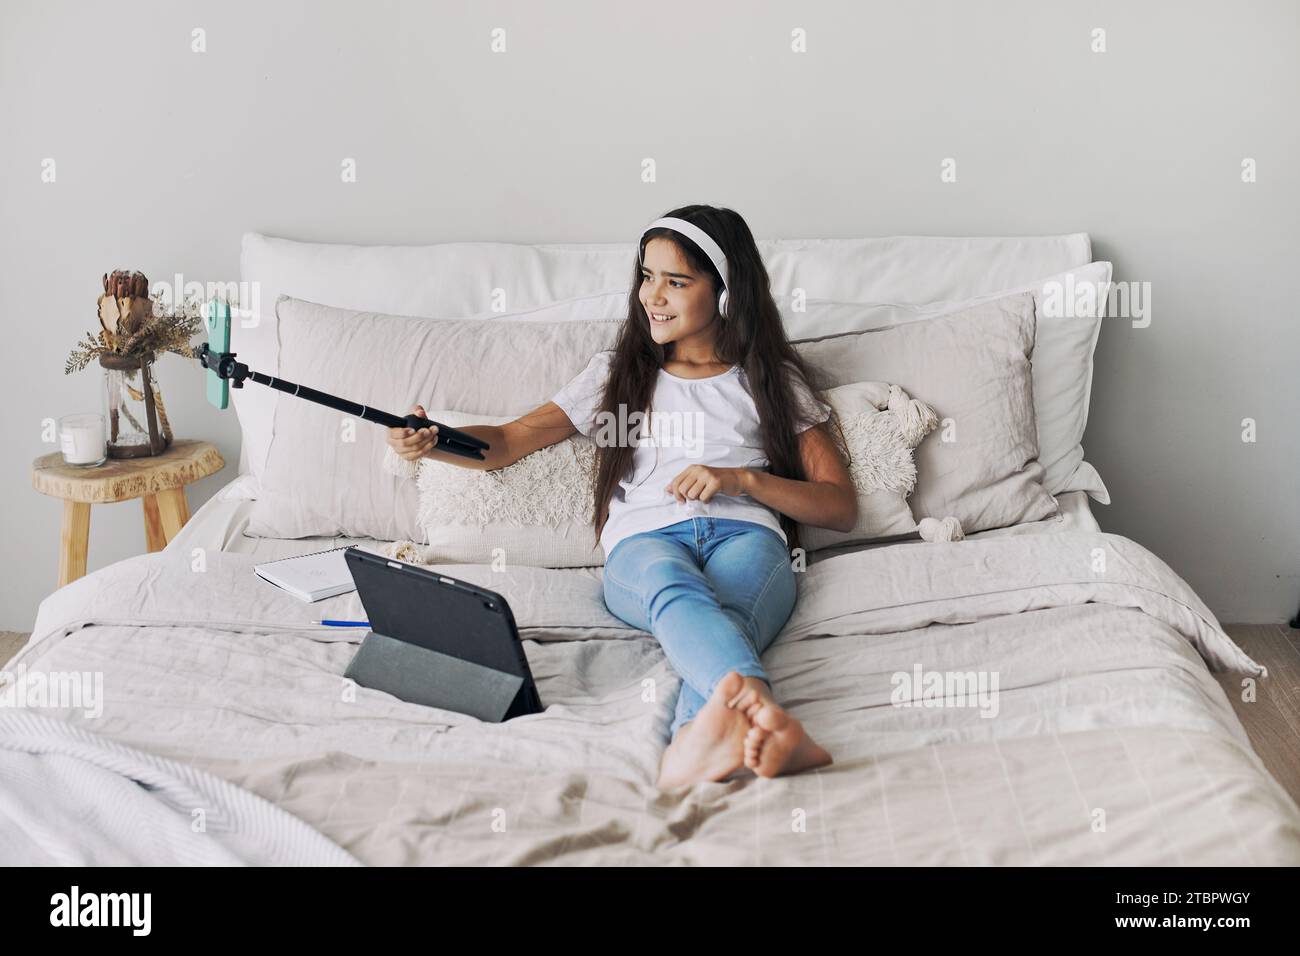 Attraktives Mädchen, das auf dem Bett im Schlafzimmer sitzt und Selfie-Stick hält, Fotos machen, Videos für Social-Media-Kanäle aufnehmen, an Live-s teilnehmen Stockfoto